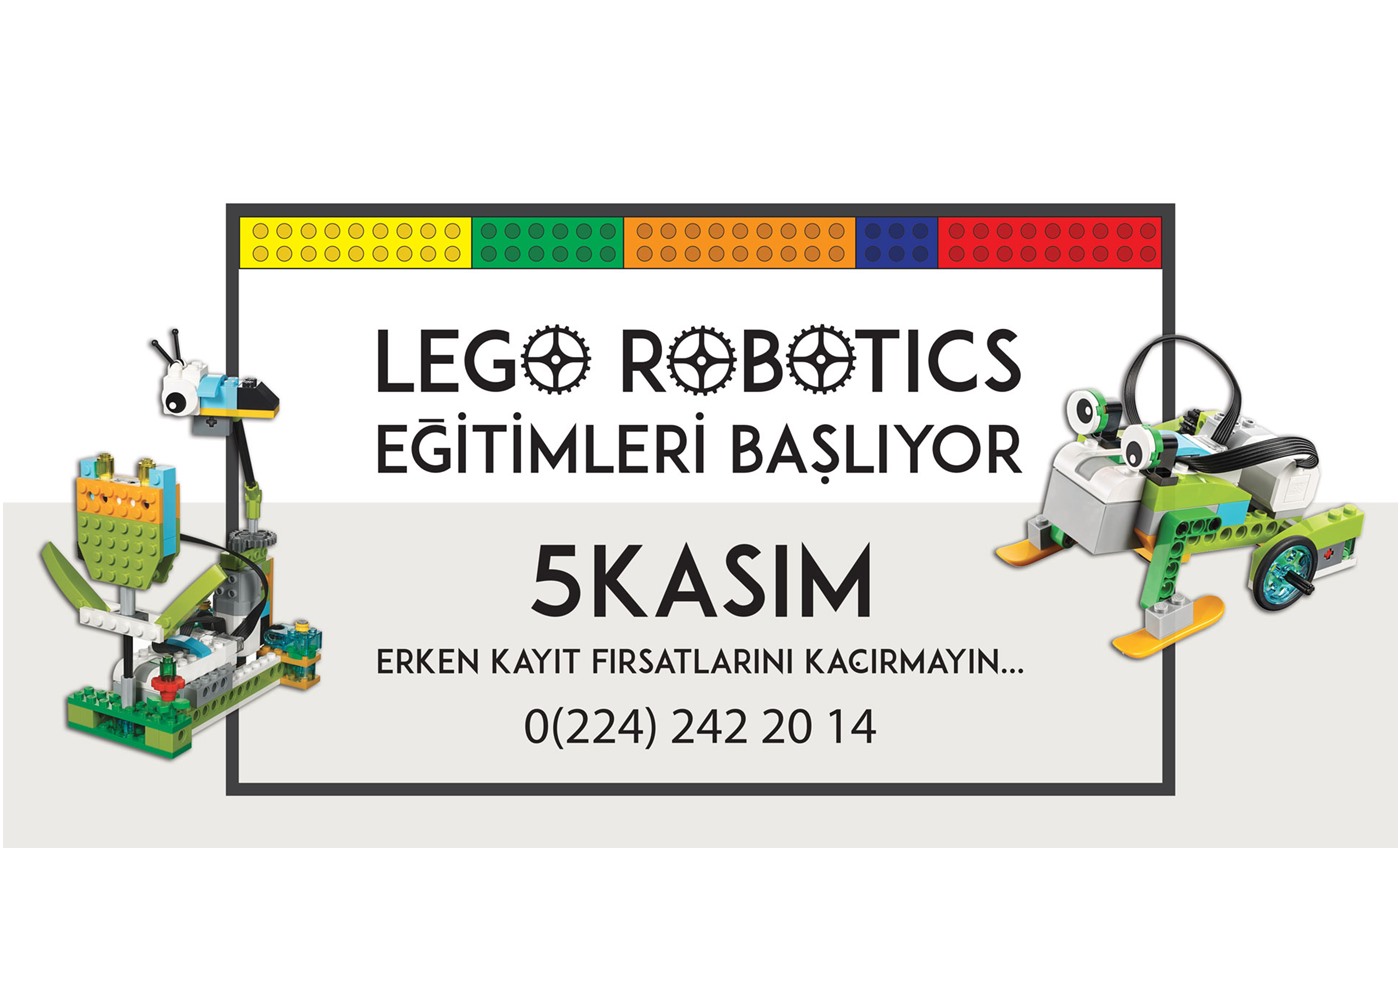 Kids Studio - Lego Robotics atölyelerimiz 5 Kasım'da Kids Studio'da başlıyor.